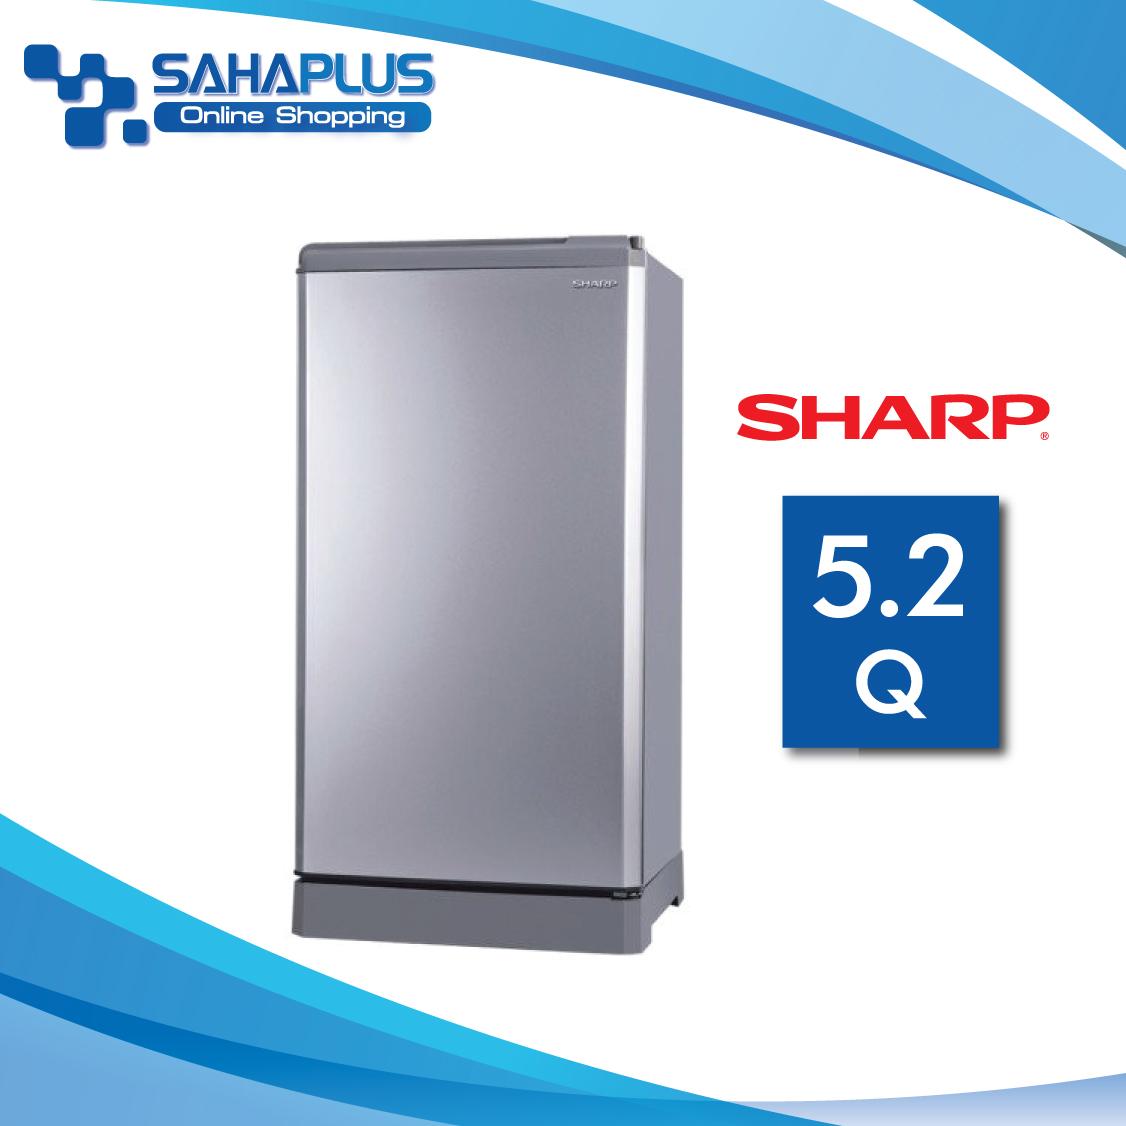 ตู้เย็น SHARP รุ่น SJ-G15S-SL ขนาดความจุ 5.2Q สีเทาเงิน, สีฟ้า และ สีชมพู